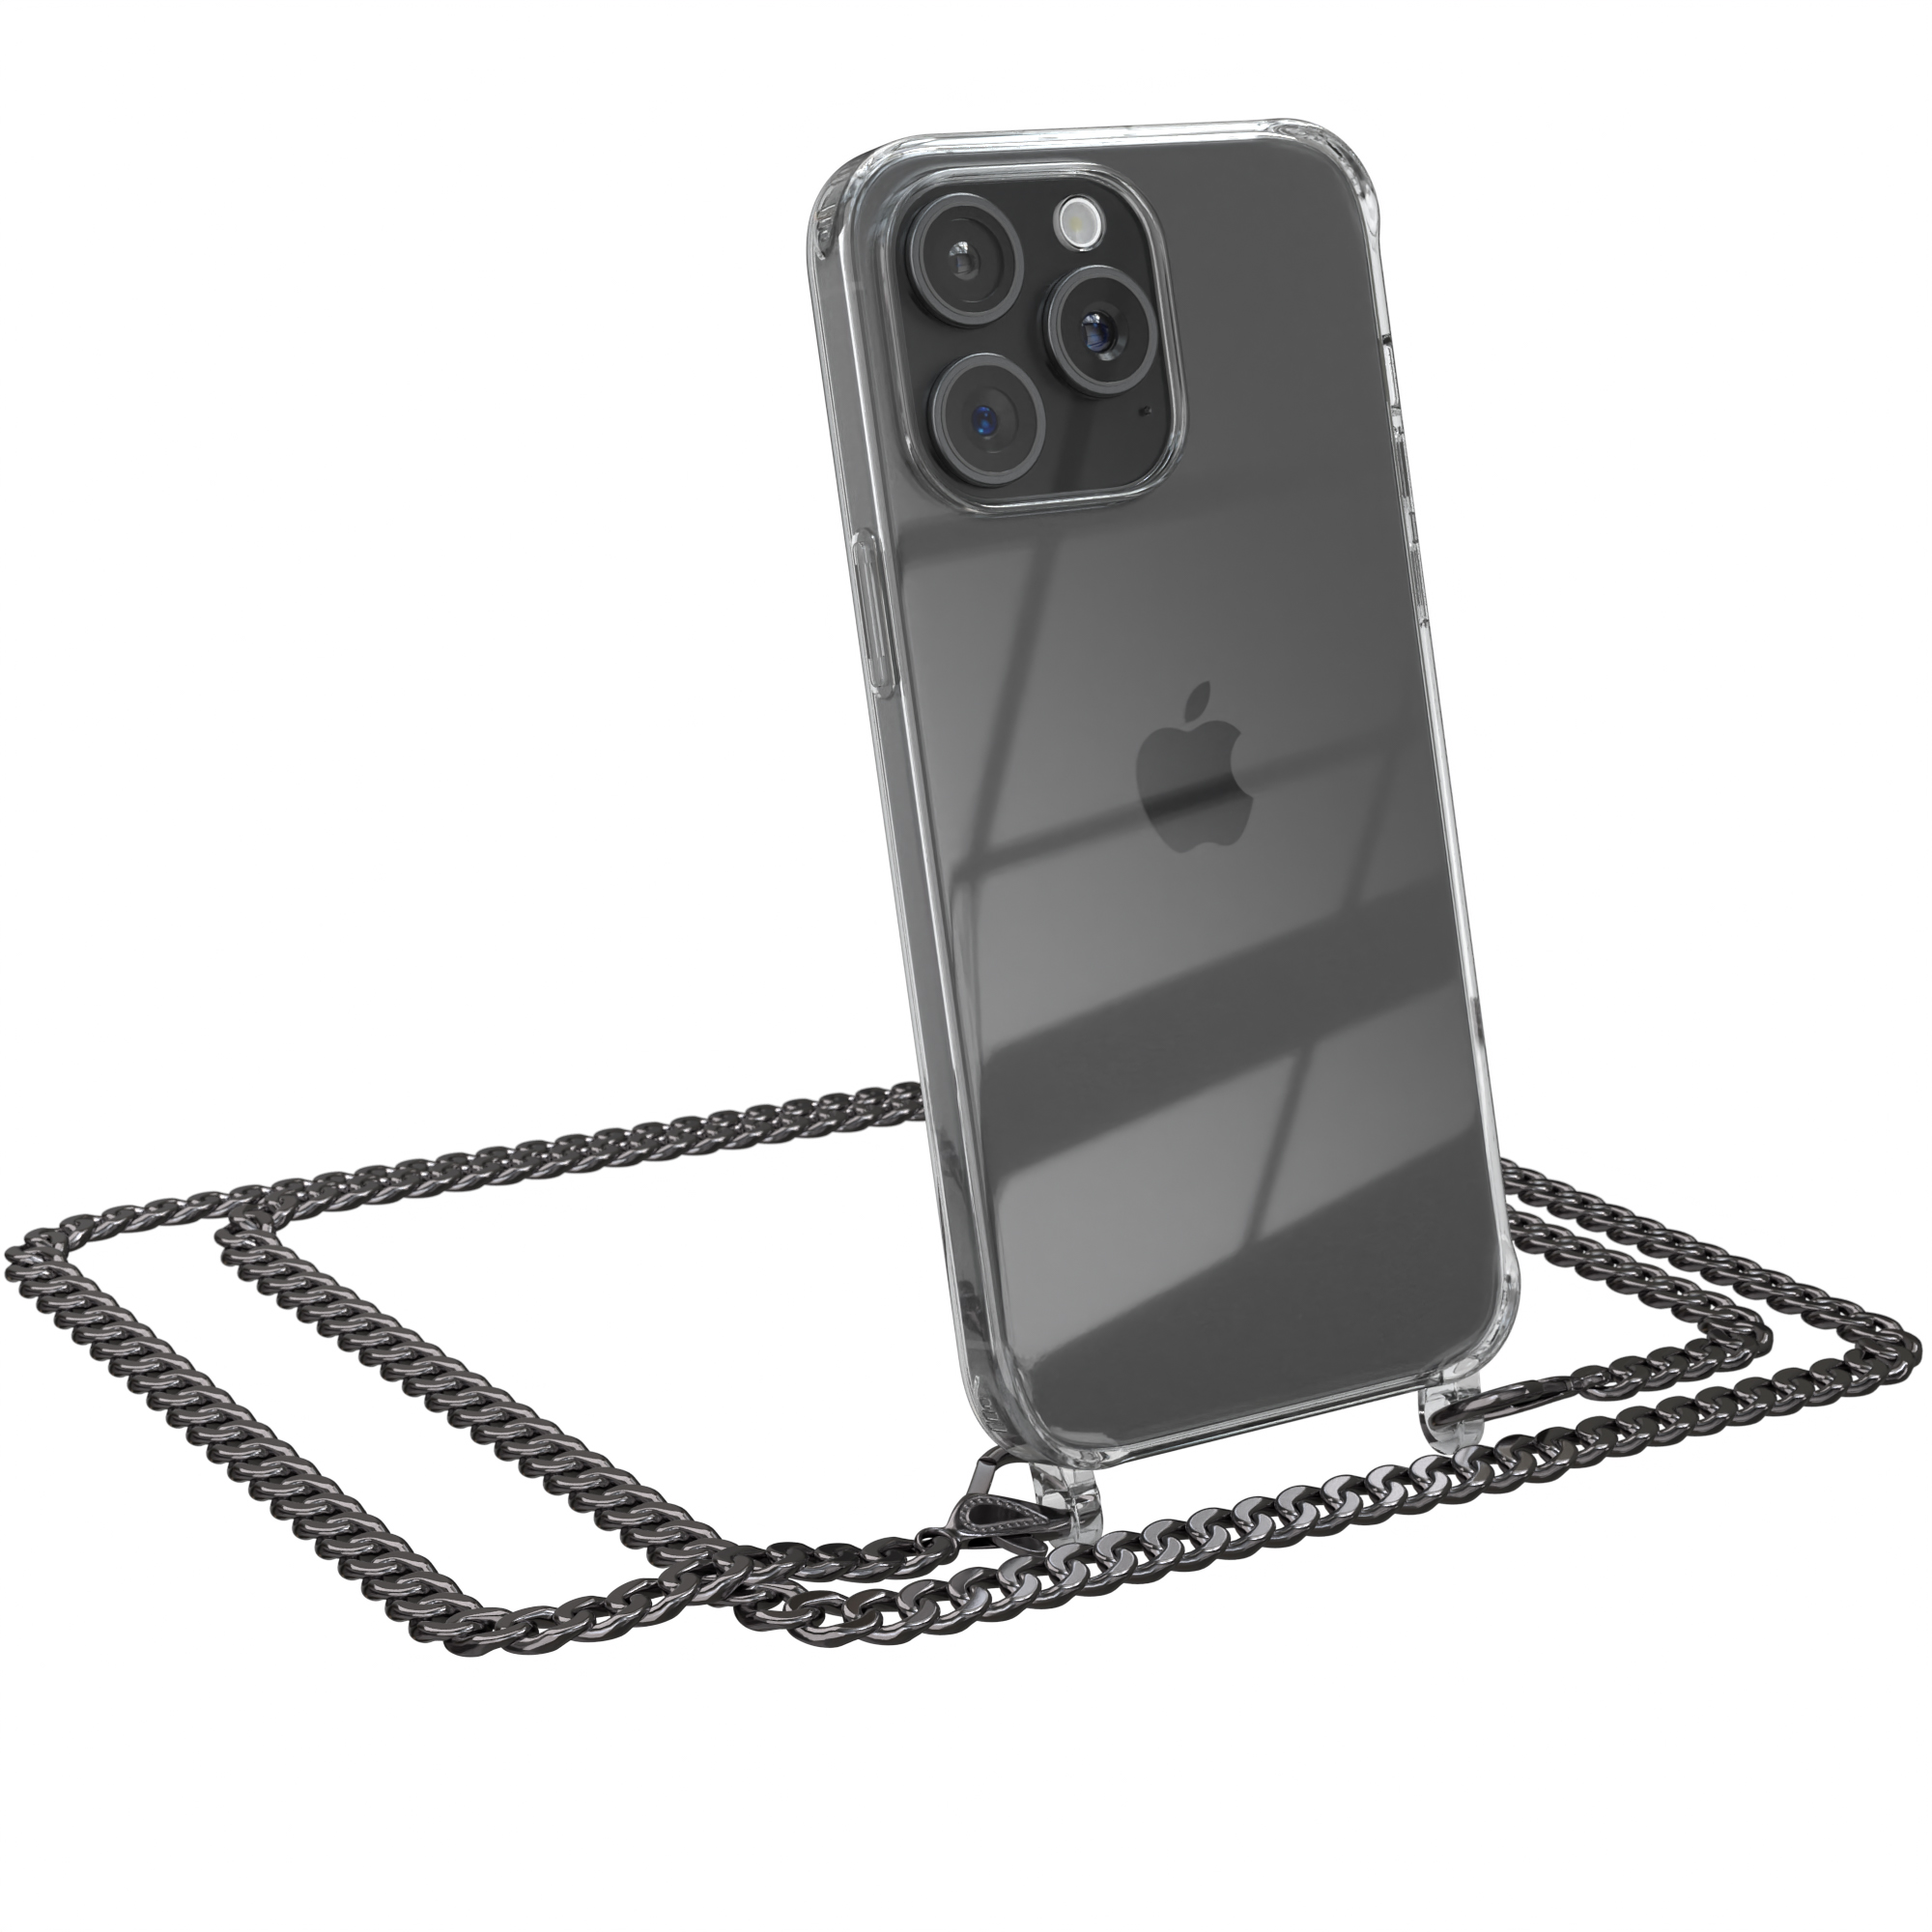 EAZY CASE Handykette Metall Apple, Kordel + iPhone Pro Umhängetasche, Schwarz, Grau extra Anthrazit 15 Max